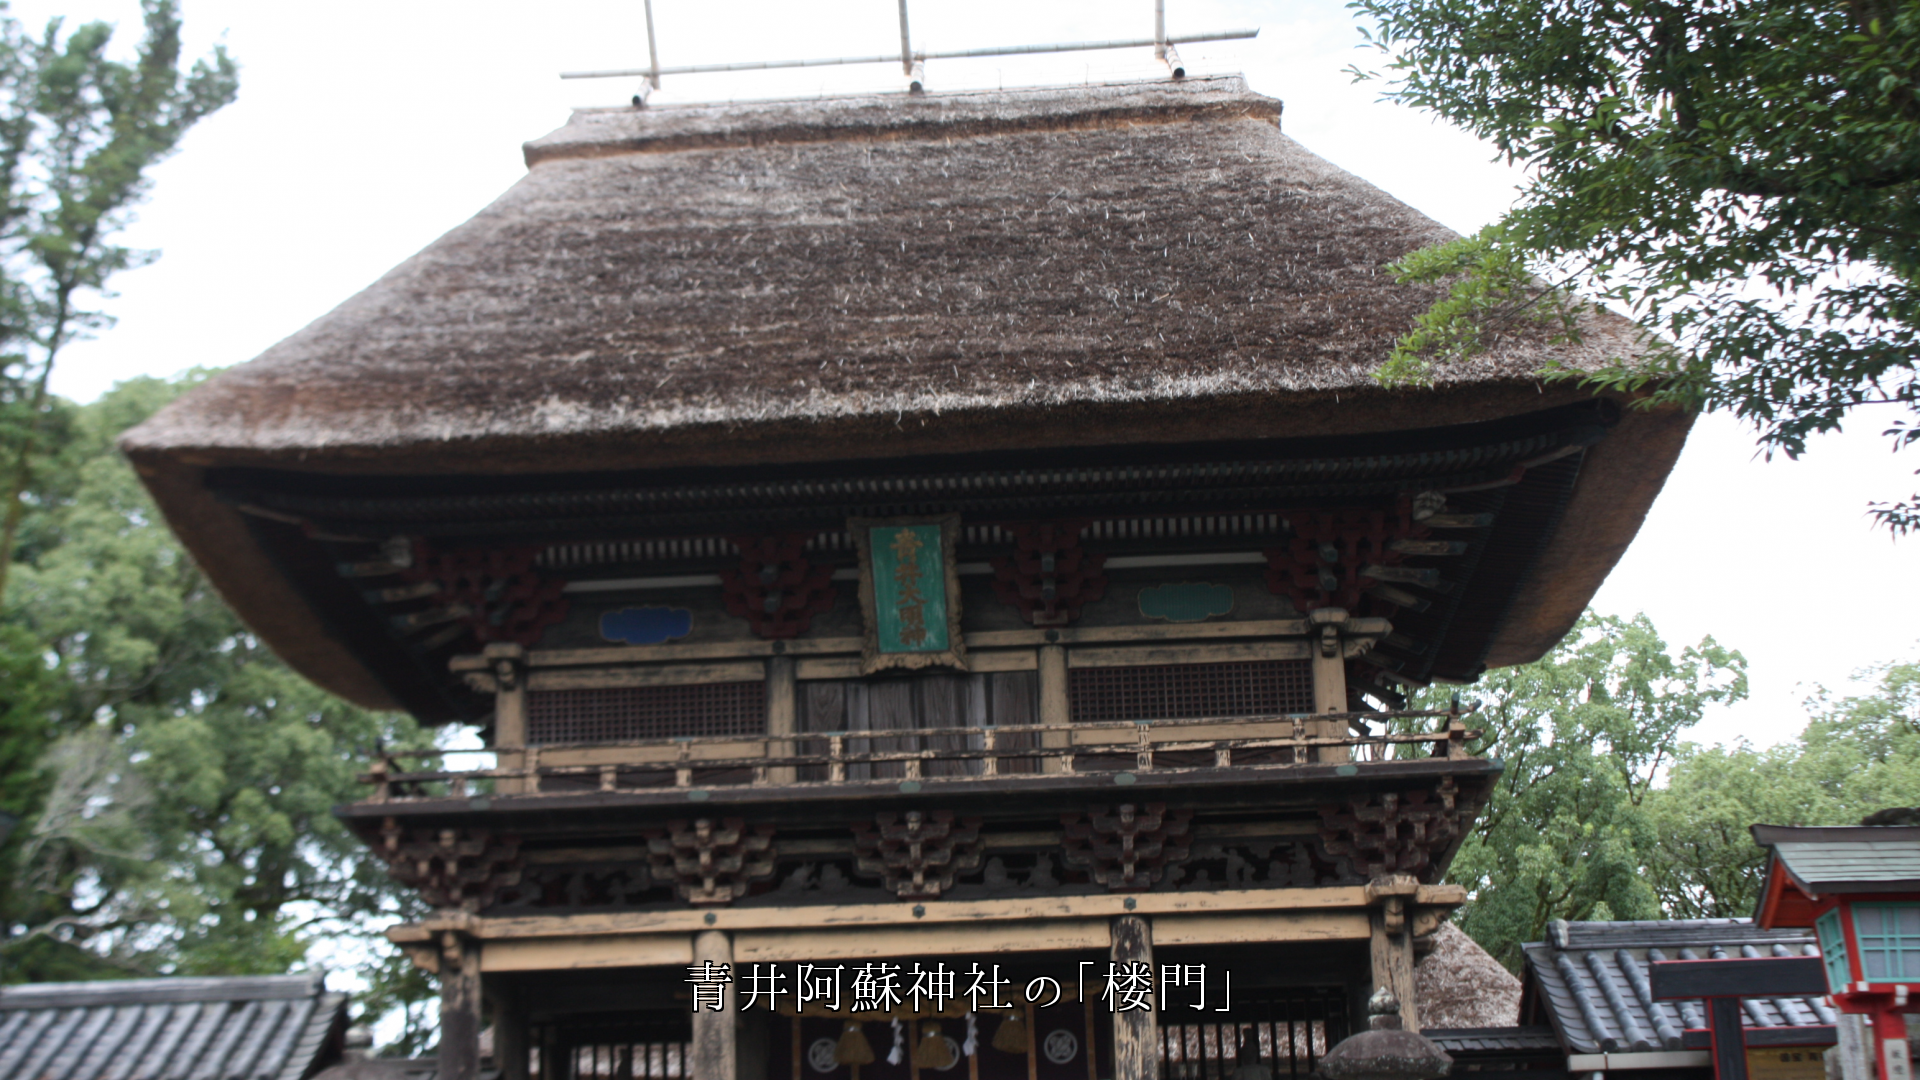 神社の茅葺き屋根  随神門、楼門、拝殿、神楽殿、 それぞれの役目で護っている